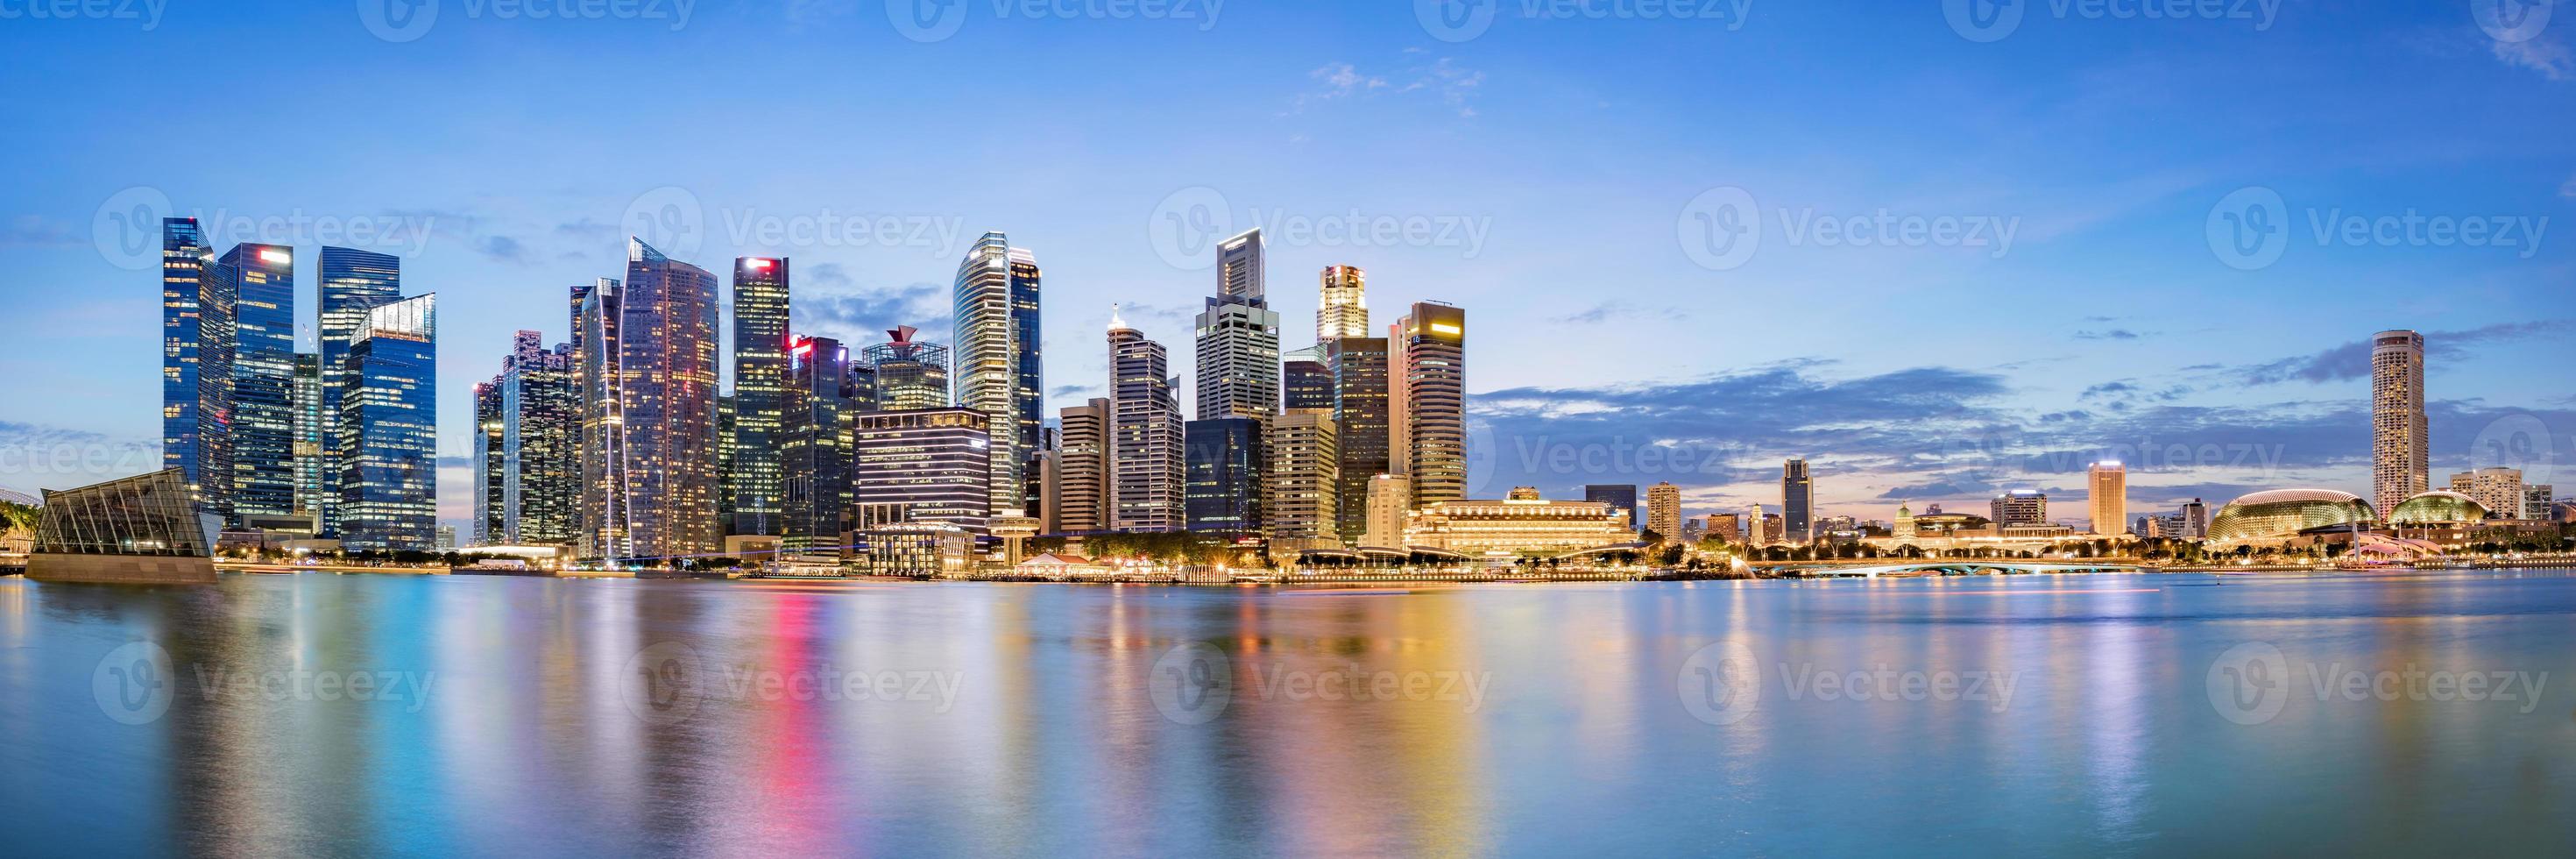 Skyline des Finanzviertels von Singapur in der Marina Bay foto